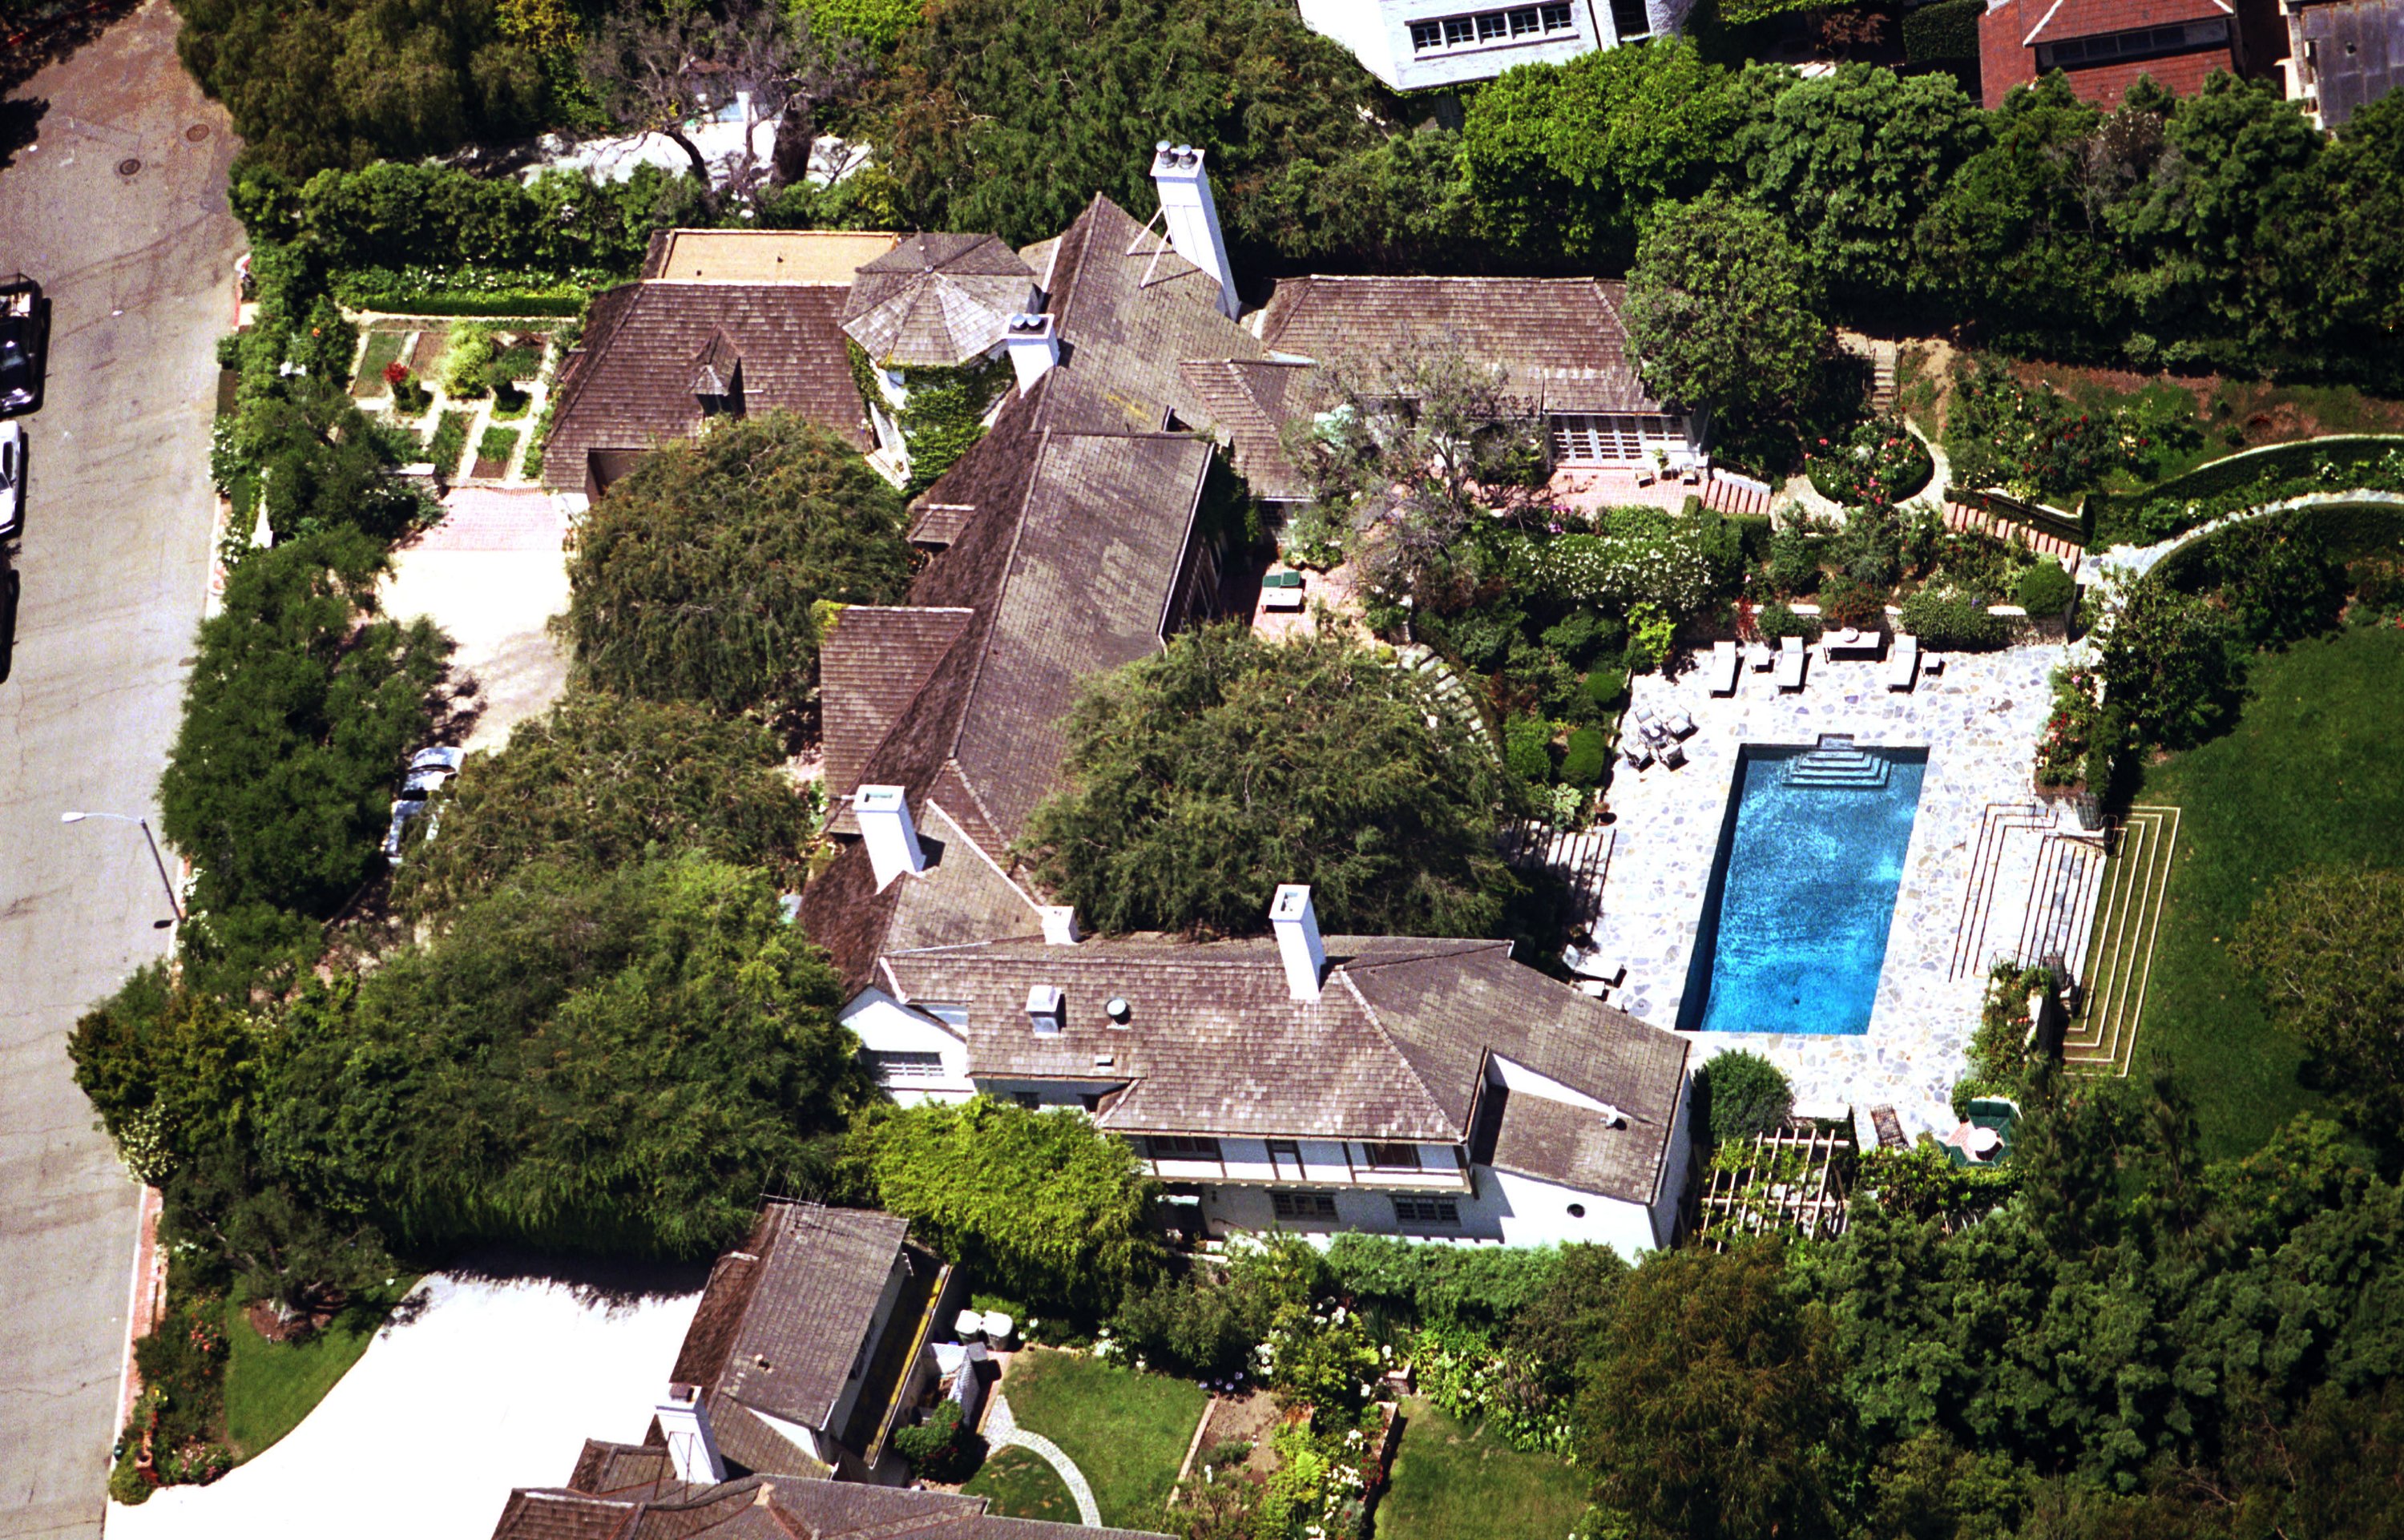 La maison de Brad Pitt et Jennifer Aniston vue d'avion le 18 juin 2001 à Malibu, Californie | Source : Getty Images